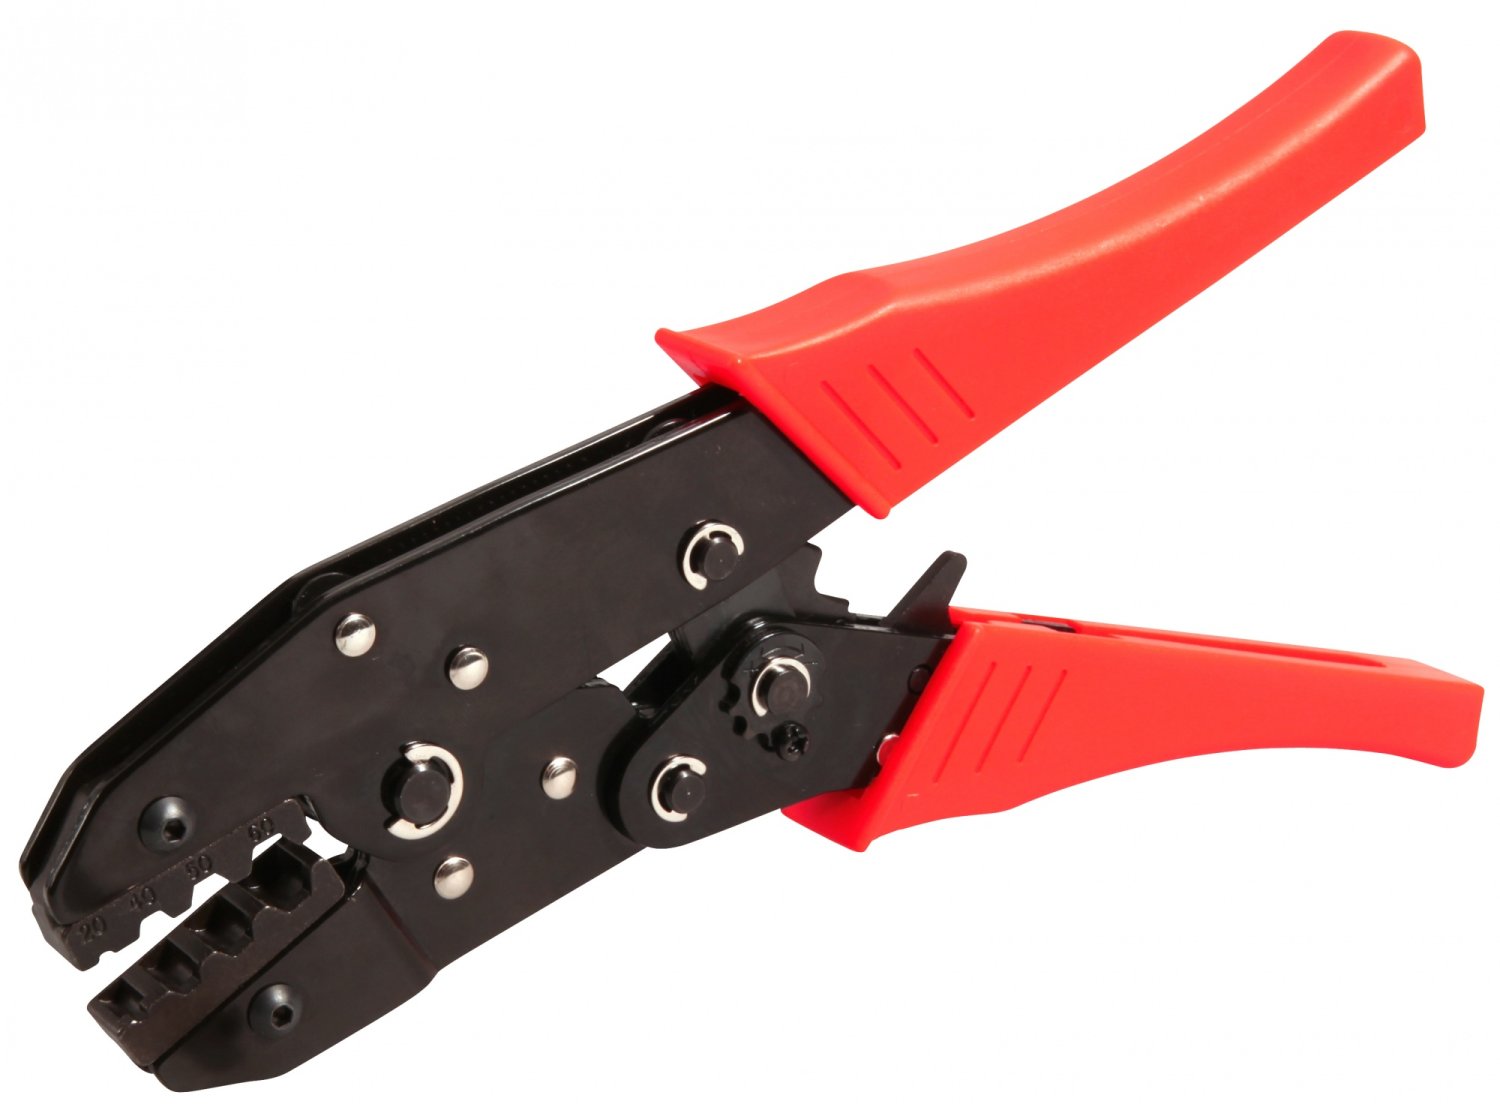 Инструмент многофункциональный ELVEDES для обжимания и троса и рубашки, красный/черный, 2009019 многофункциональный инструмент favourite mf500 500 вт 23000 кол мин 3 насадки